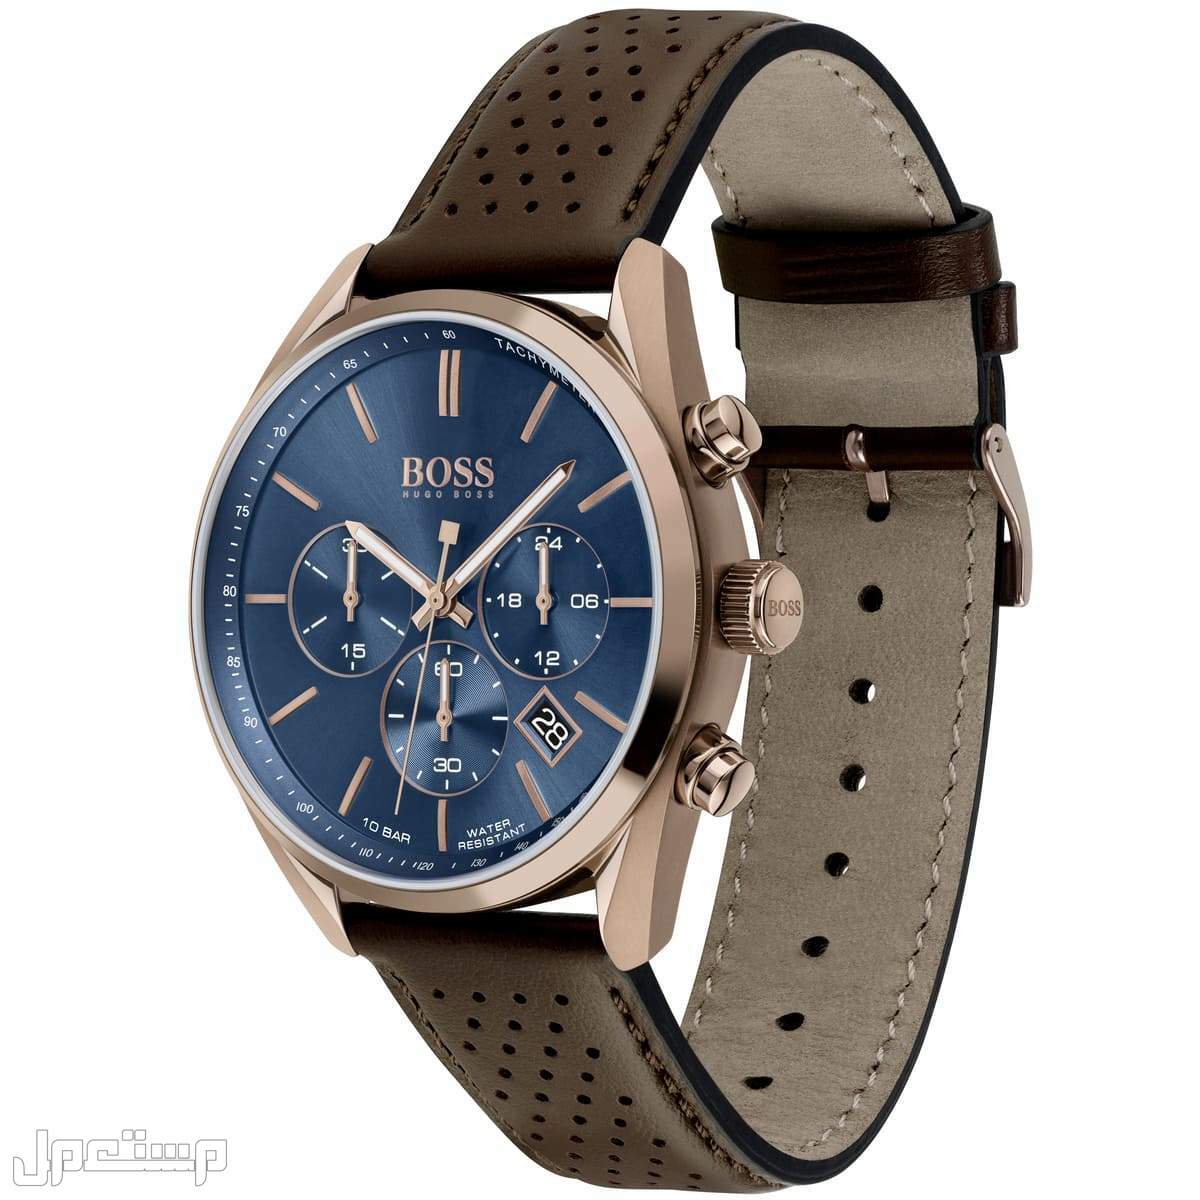 أفضل ساعات بوس Boss الأكثر مبيعا هذا العام وأسعارها في اليَمَن ساع 1513817-hugo-boss-watch-men-blue-dial-leather-brown-strap-quartz-analog-chro